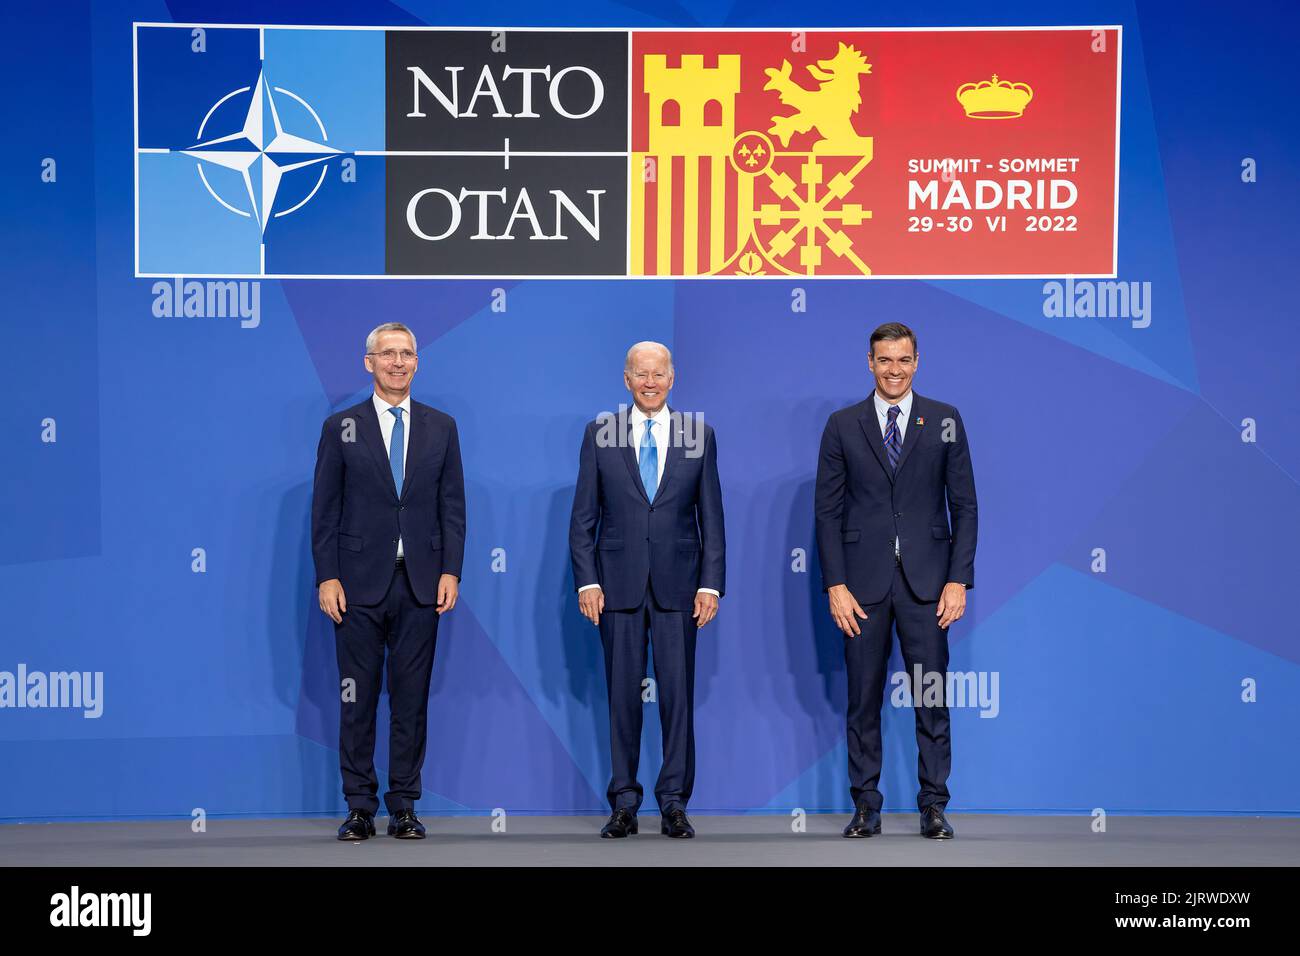 Präsident Joe Biden begrüßt den NATO-Gipfel mit NATO-Generalsekretär Jens Stoltenberg und dem spanischen Premierminister Pedro Sánchez am Mittwoch, den 29. Juni 2022, auf der IFEMA Madrid in Madrid. (Offizielles Foto des Weißen Hauses von Carlos Fyfe) Stockfoto